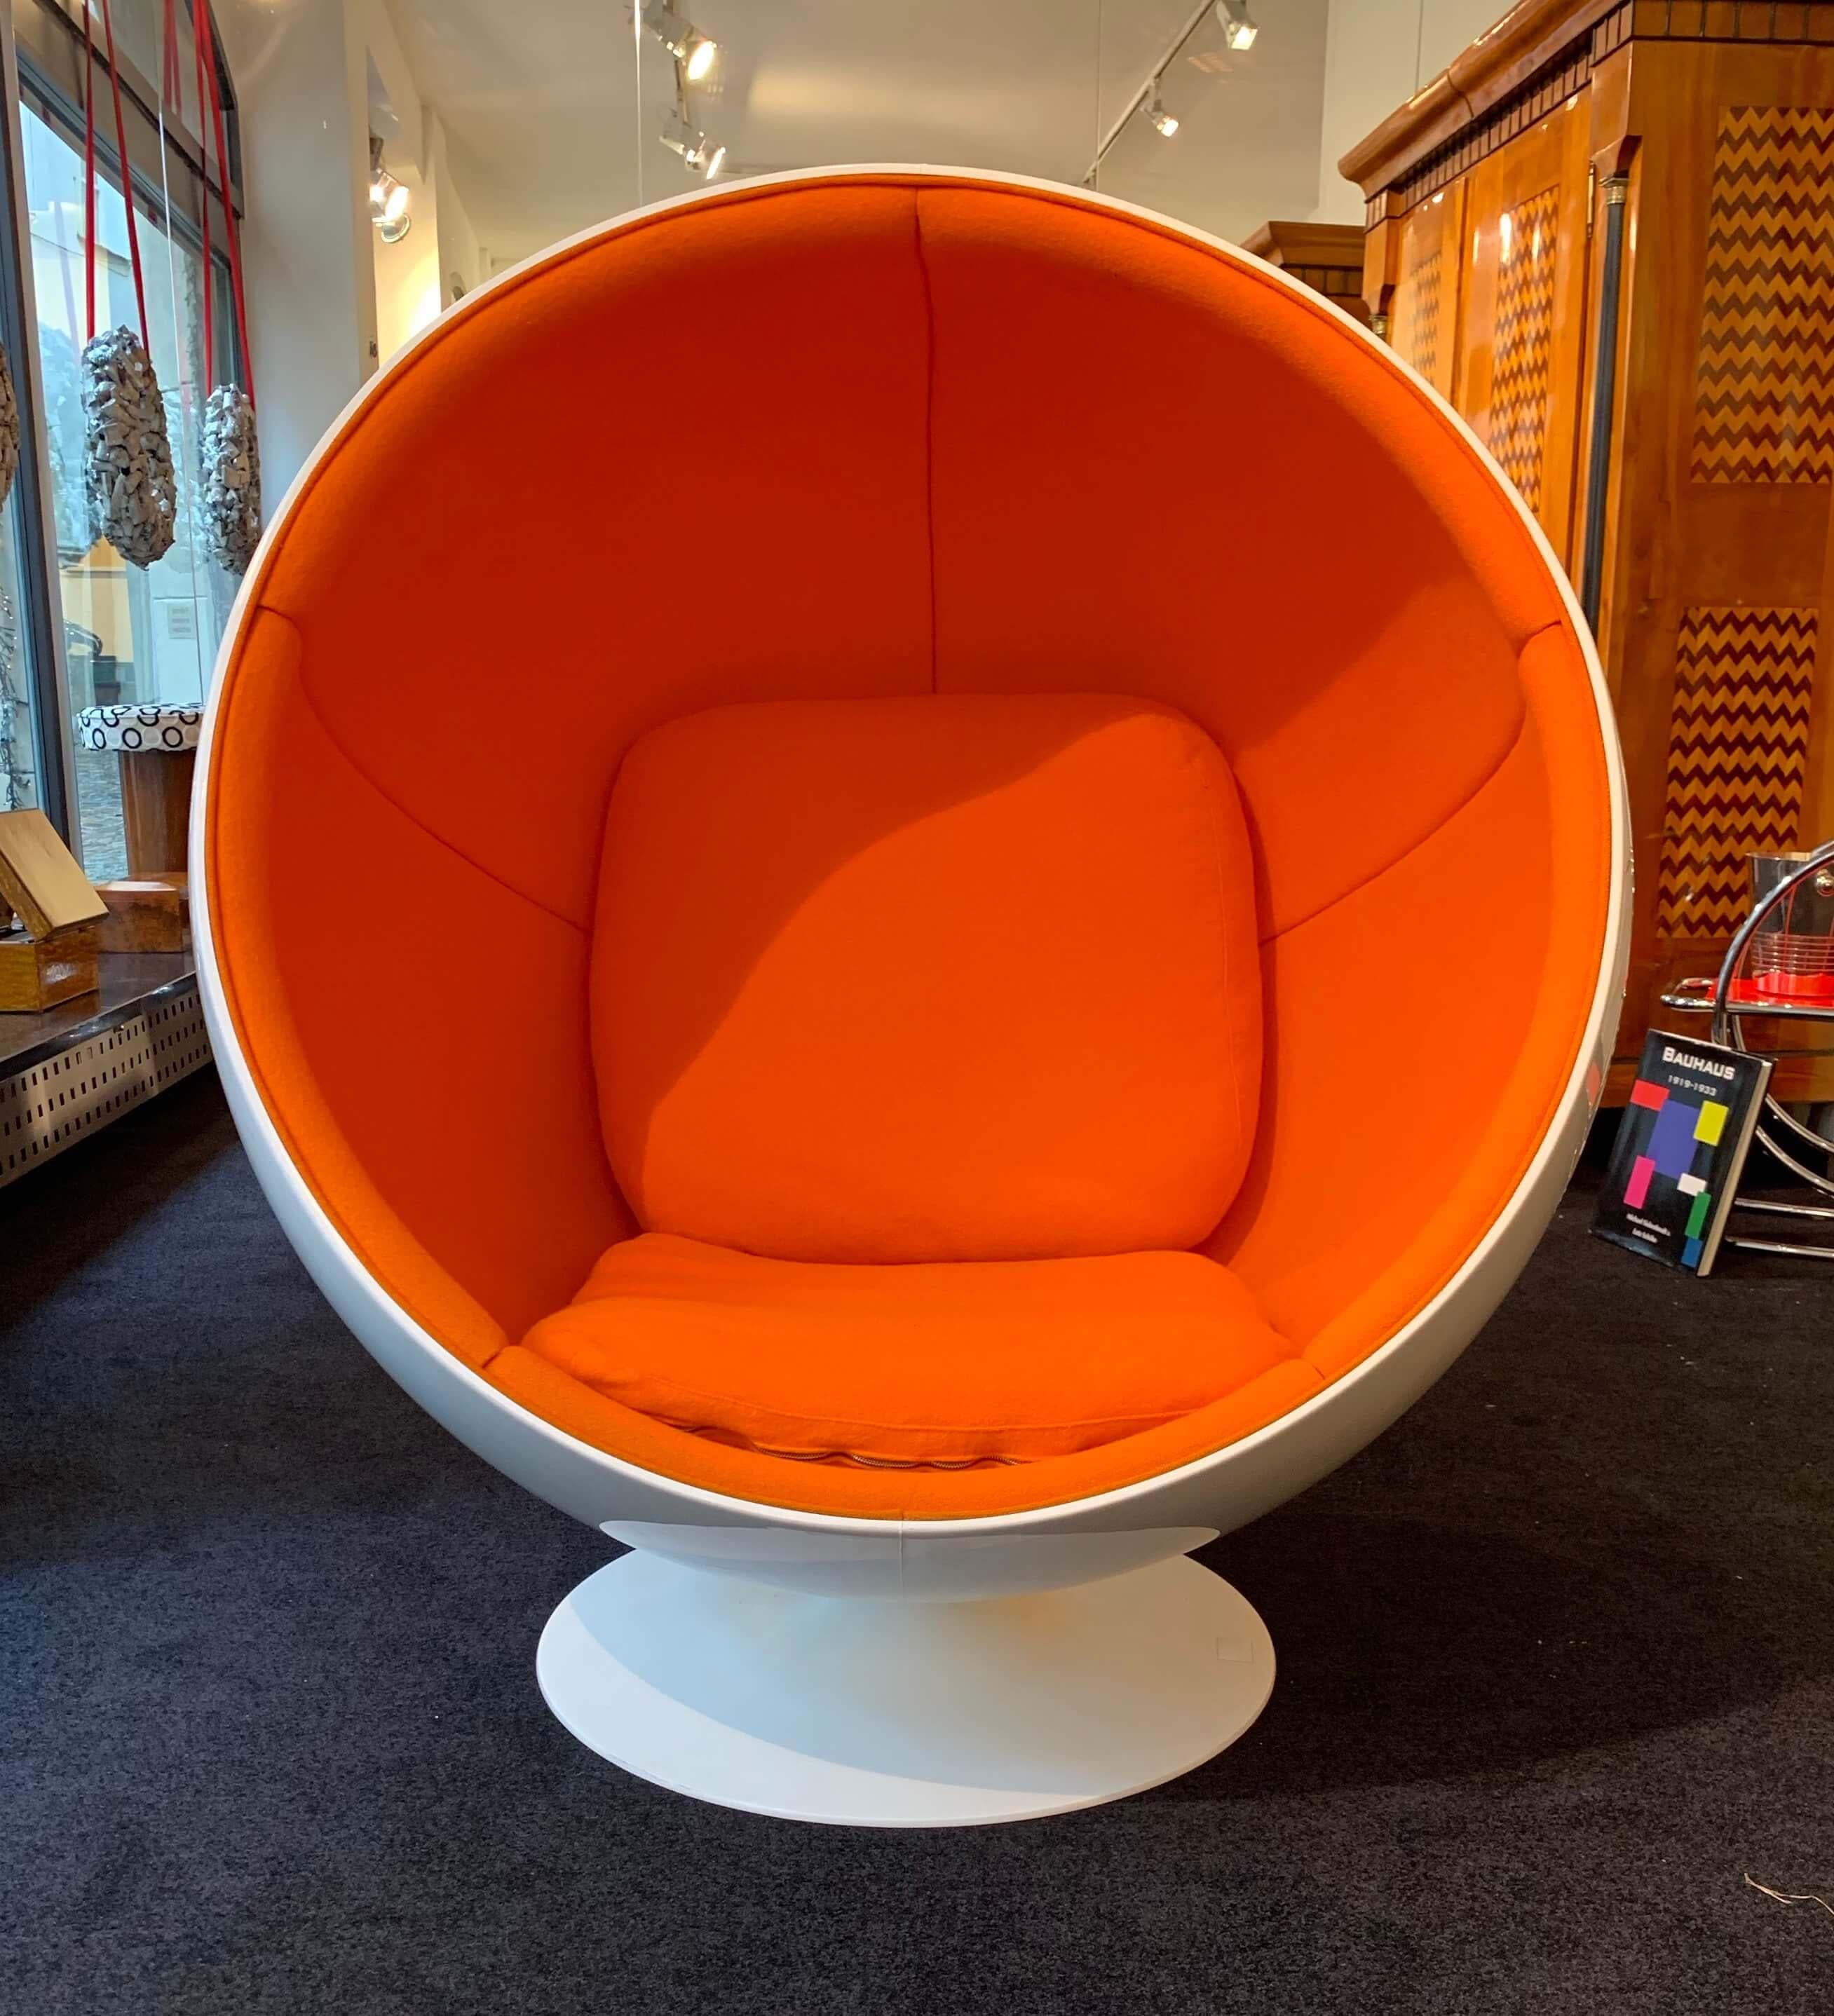 Original Ball Chair von Adelta:: Eero Aarino für Asko:: Orange und Weiß:: Space Age Periode:: Finnland:: 1980/90er Jahre

Design: 1963:: Eero Aarino (geboren 1932 in Helsinki) für Asko. 
Hersteller: Adelta (Kennzeichnung auf dem Bein)
Klappsitz::